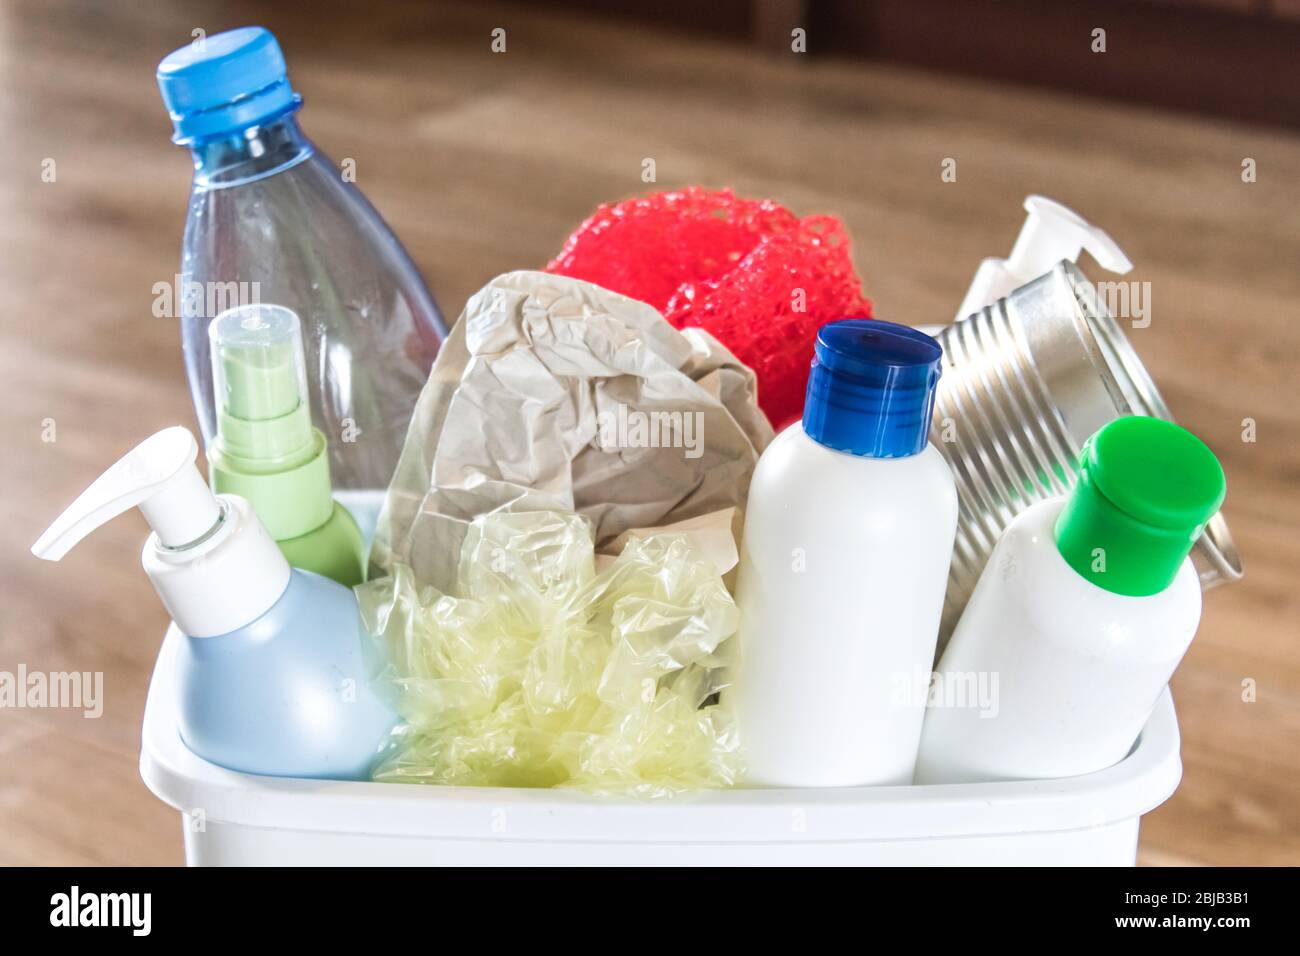 Cestino bianco con spazzatura domestica. Bottiglie di plastica e carta in un cestino. Cestino con spazzatura in cucina. Foto Stock